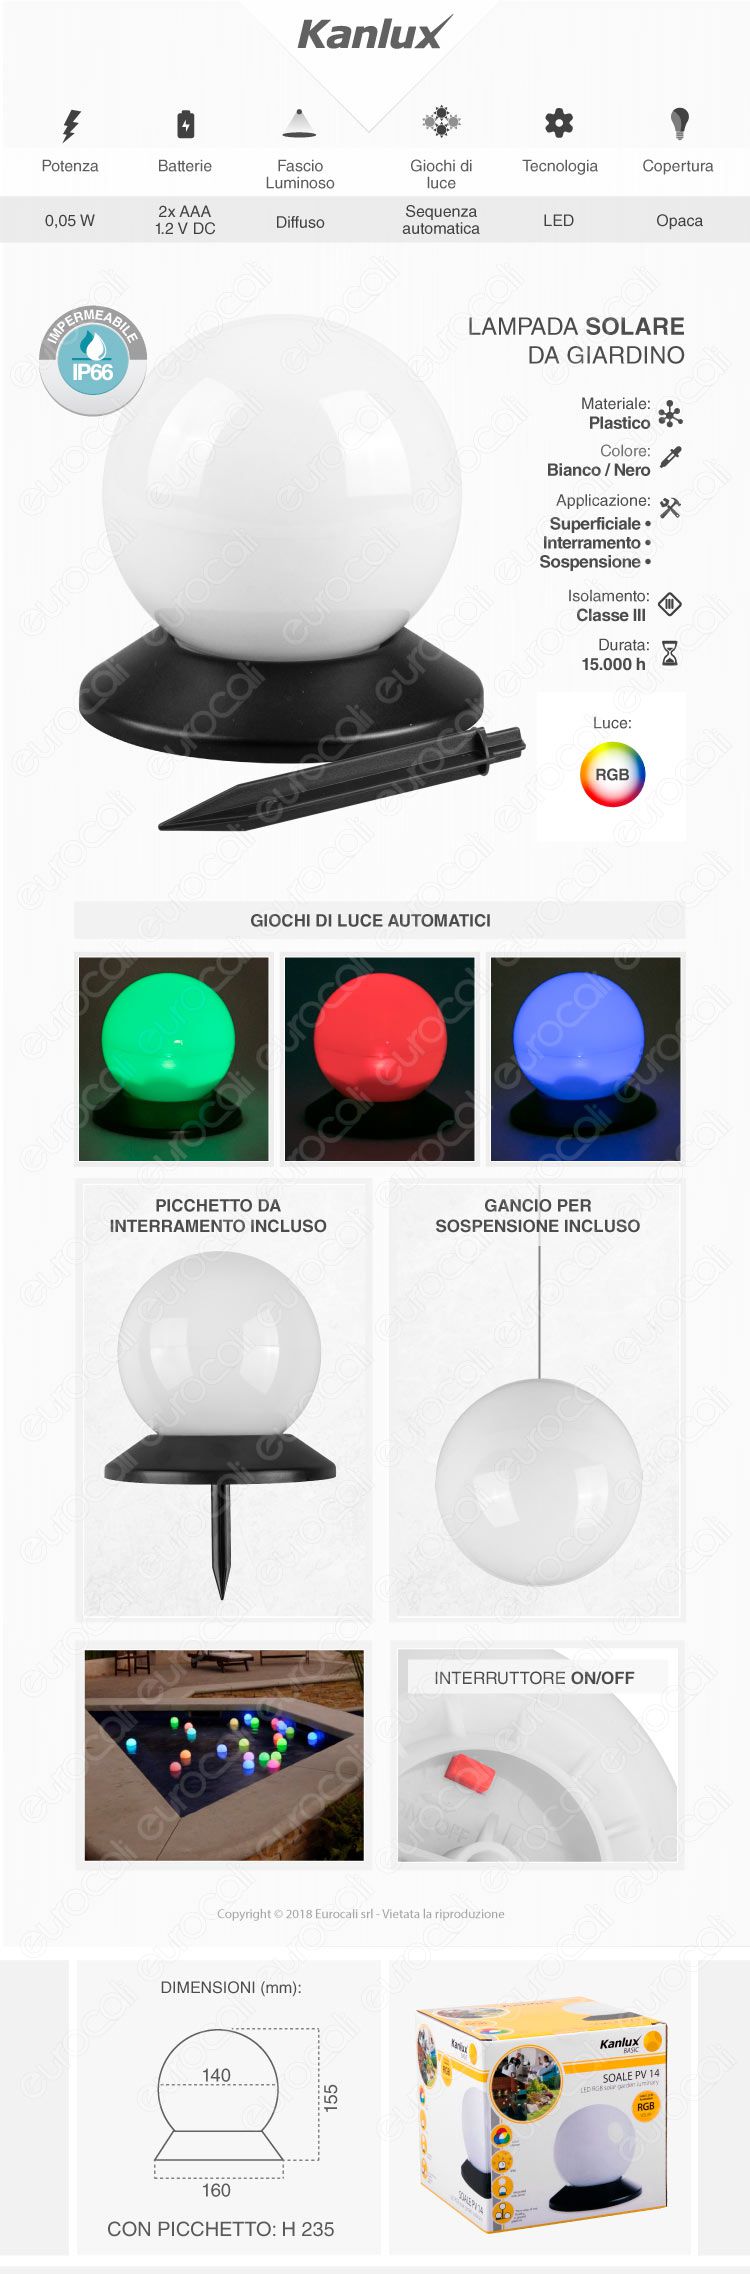 Kanlux Sfera con Luce LED RGB Multicolor con Pannello Solare e Picchetto